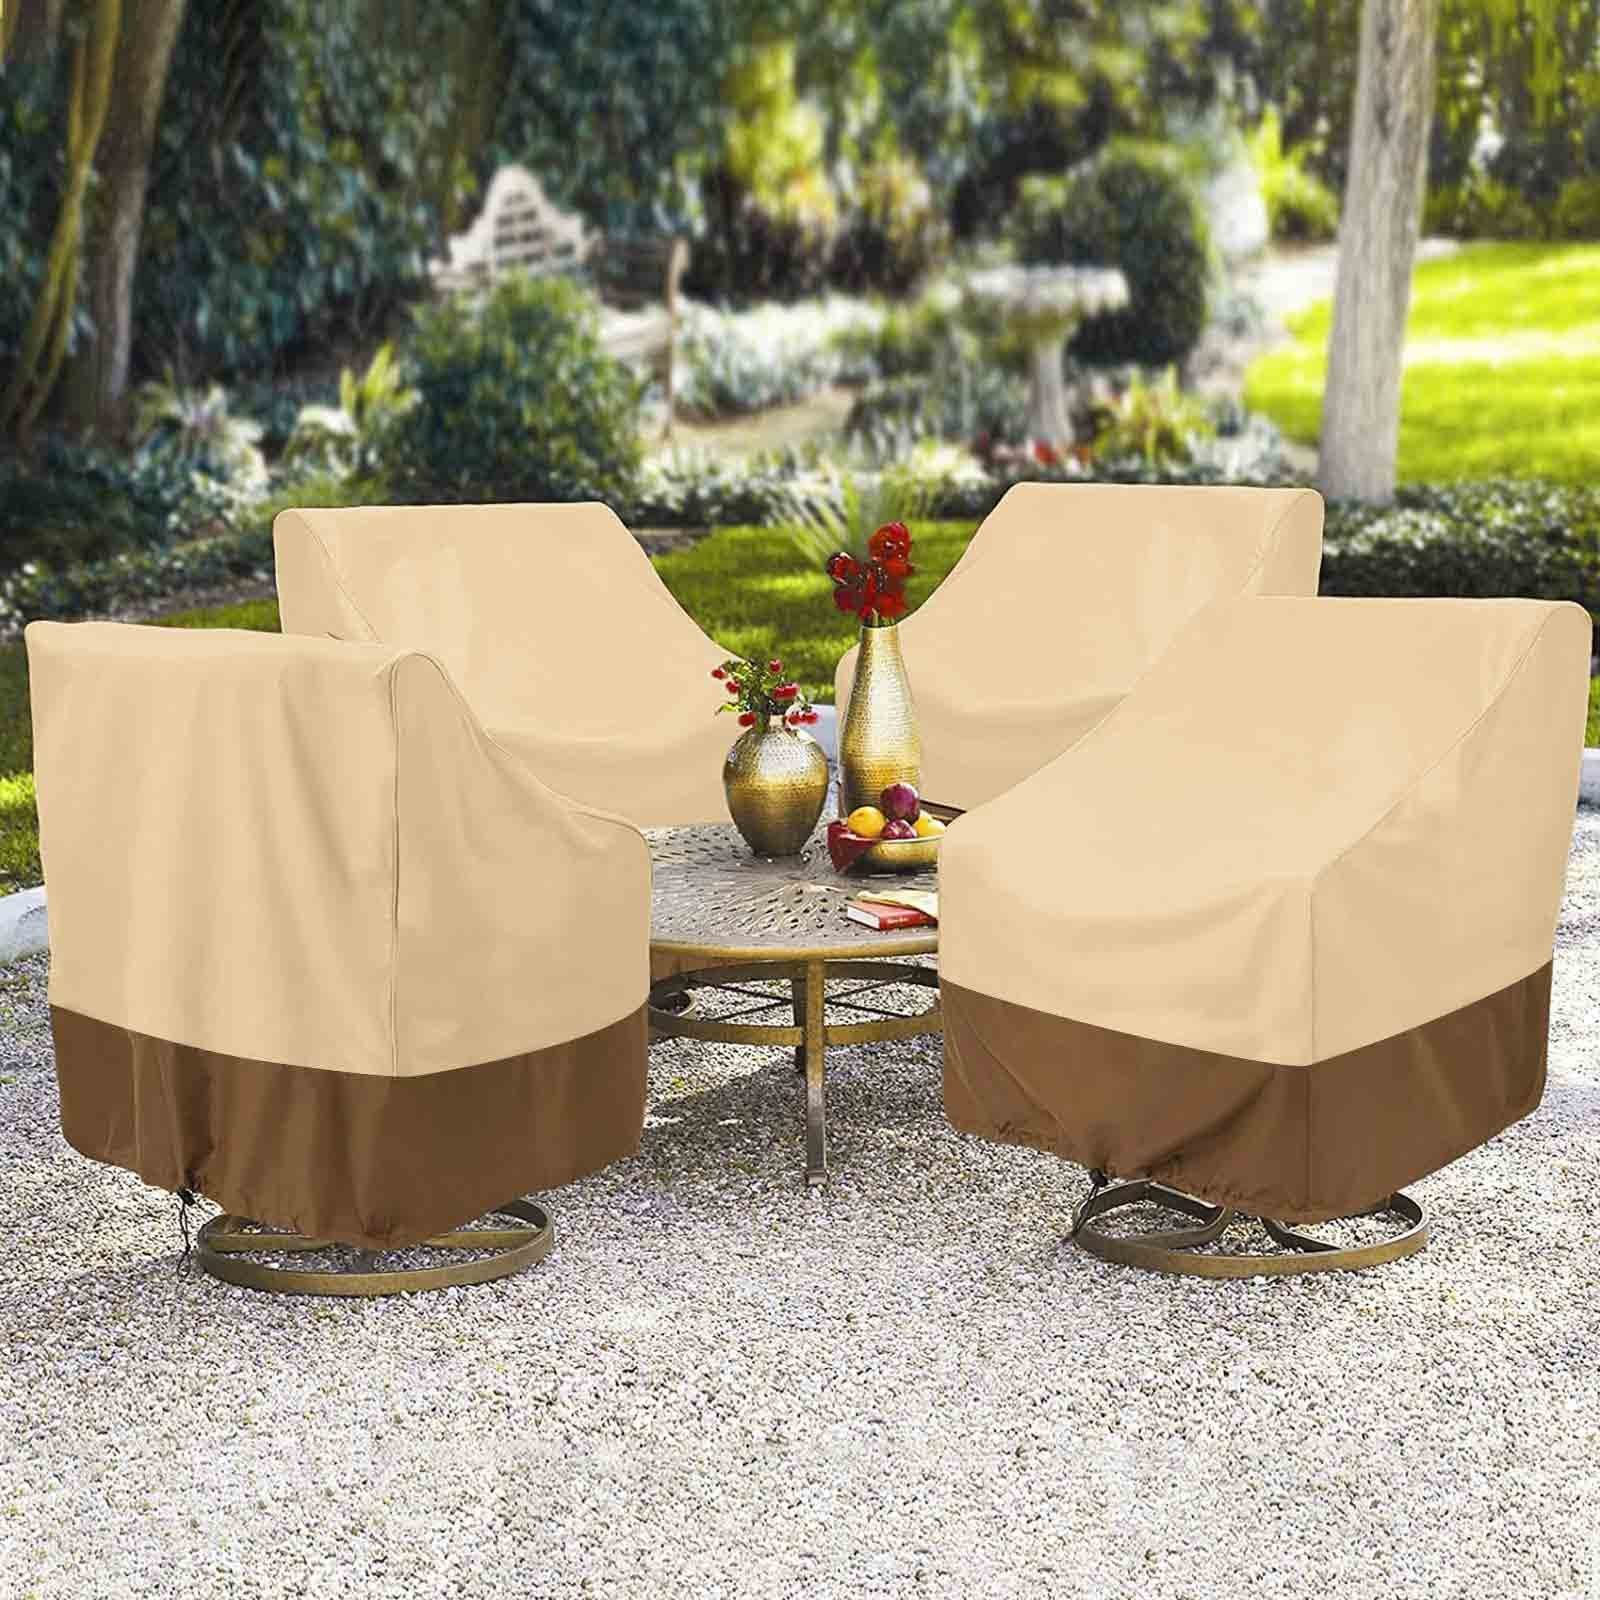 für Outdoor-Stuhl Möbel Rasen Sunicol Beige, Abdeckung, Anti deckt Ultraviolet, Terrasse wasserdicht, Gartenmöbel-Schutzhülle